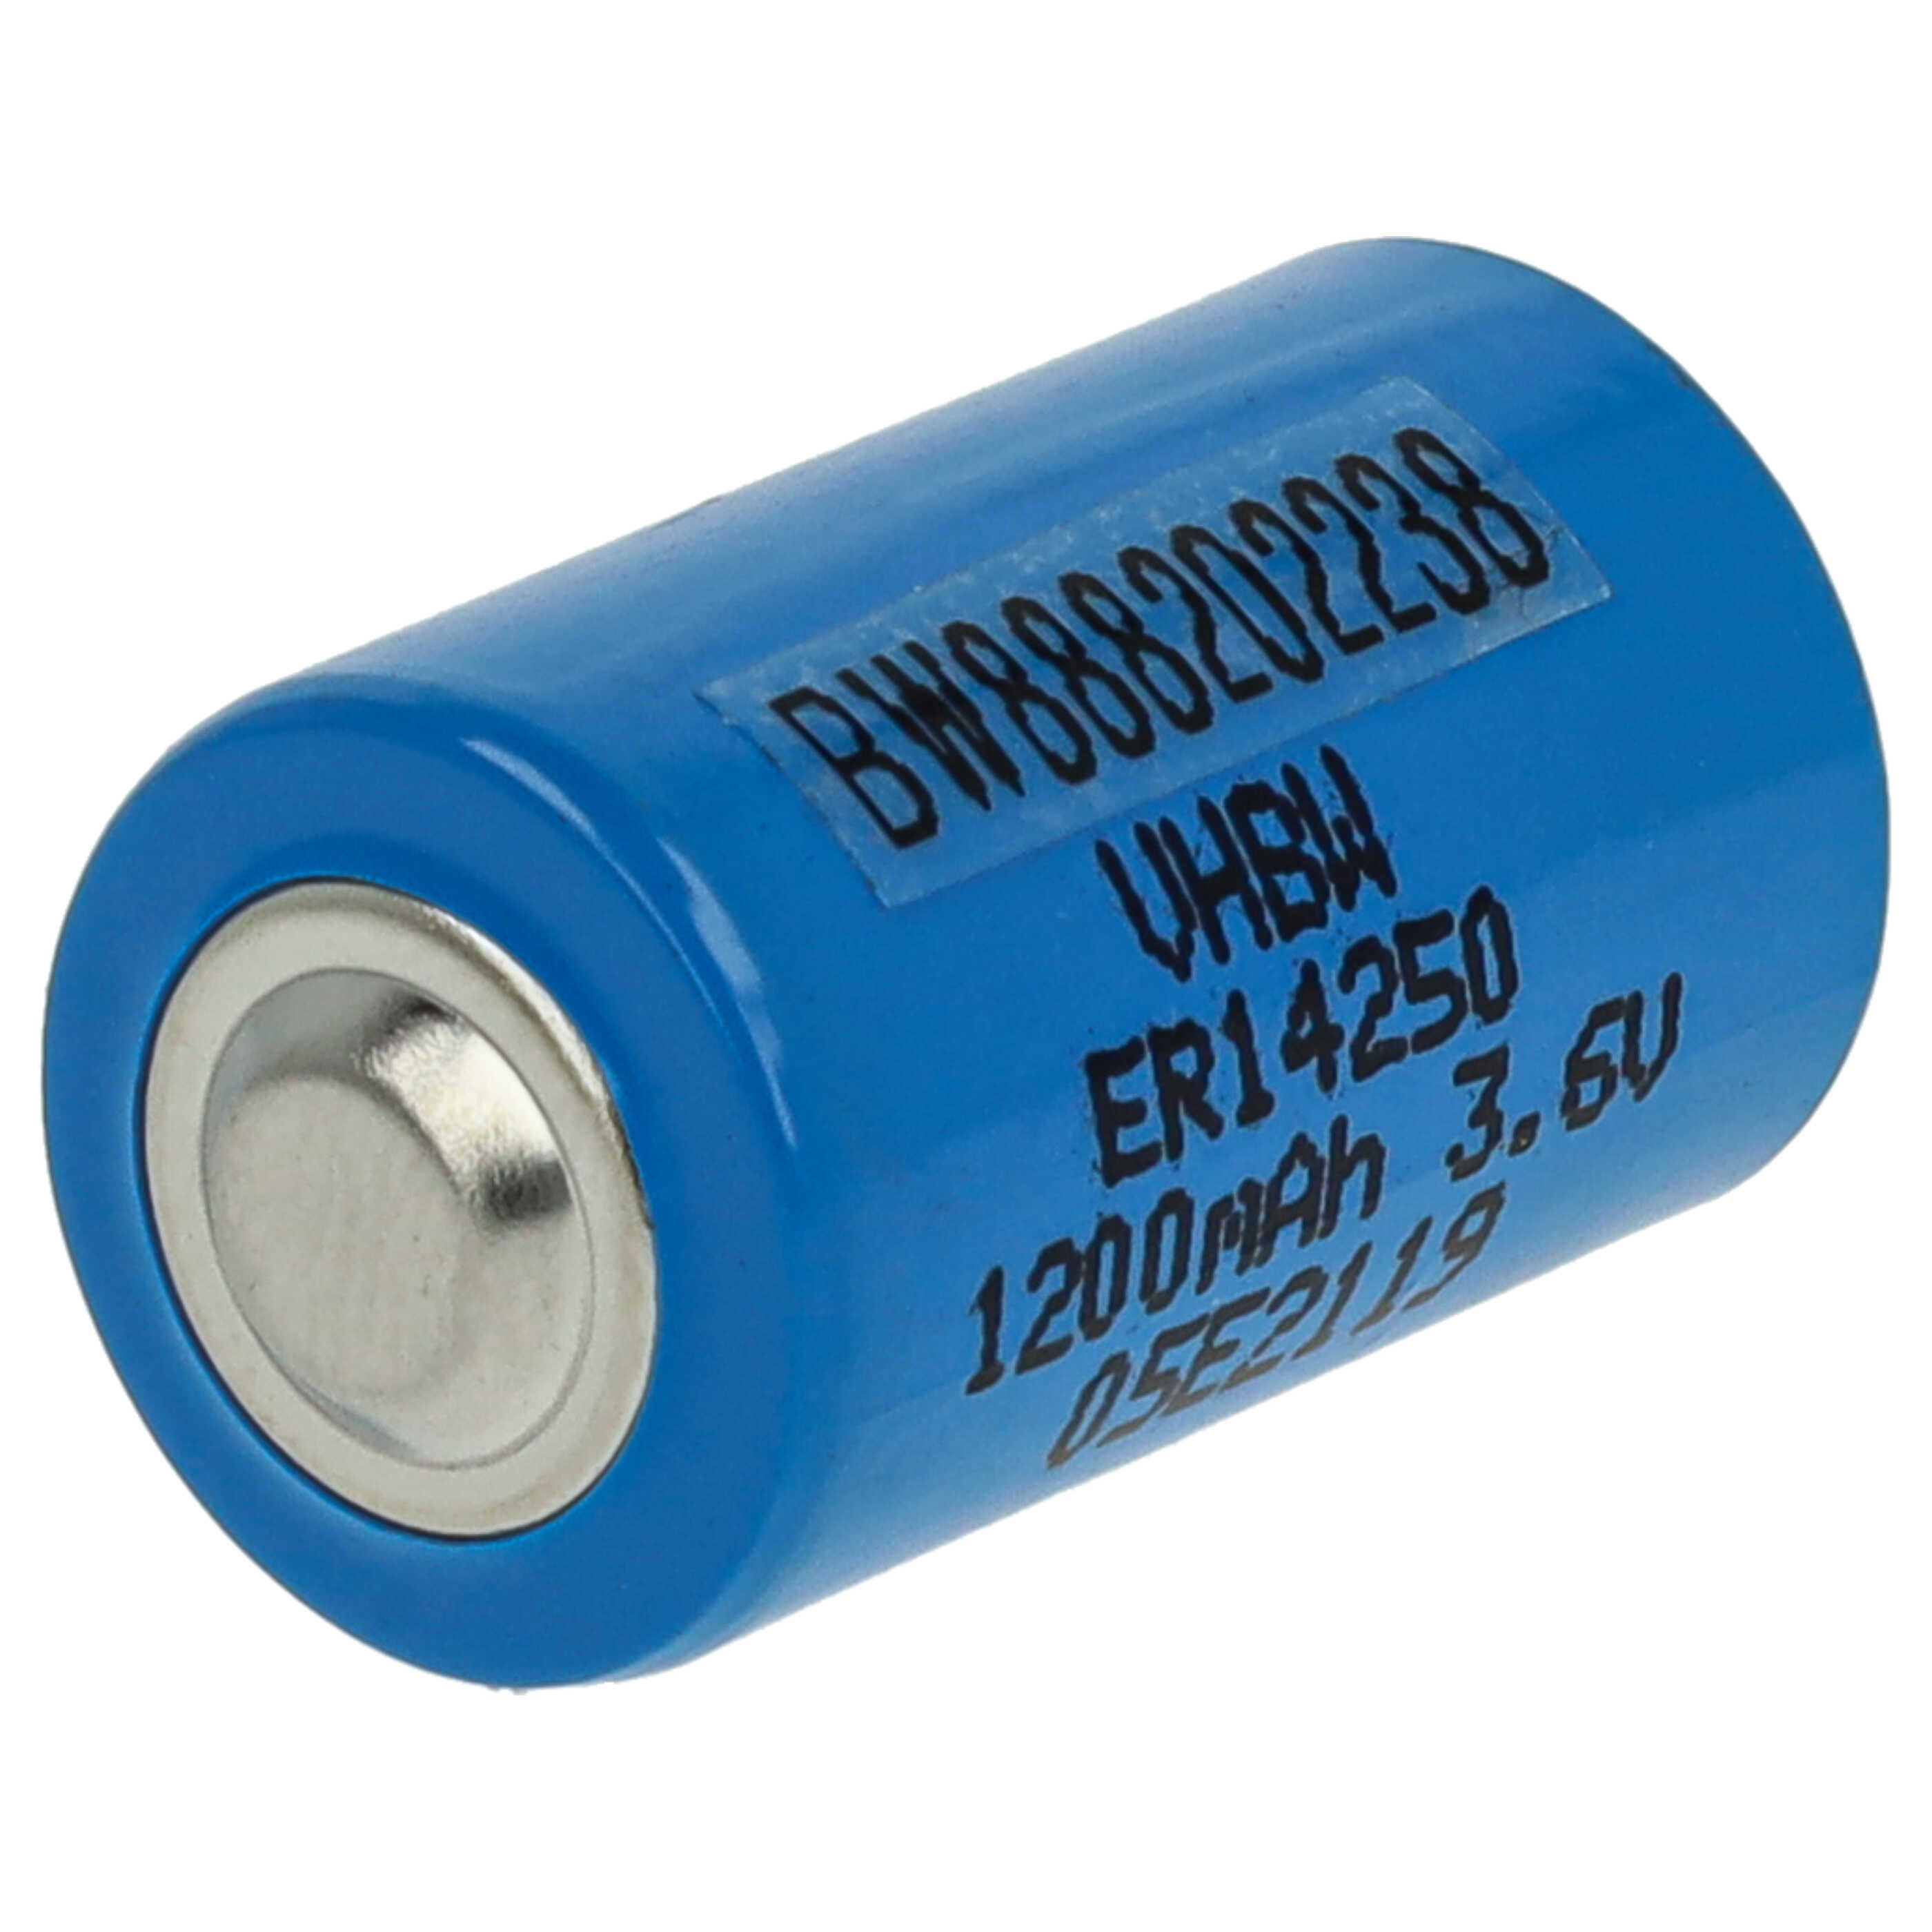 ER14250 Spezial-Batterie als Ersatz für 1/2AA, 1770-XZ, 3B26, 418-0076, 60-0576-100 - 1200mAh 3,6V Li-SOCl2